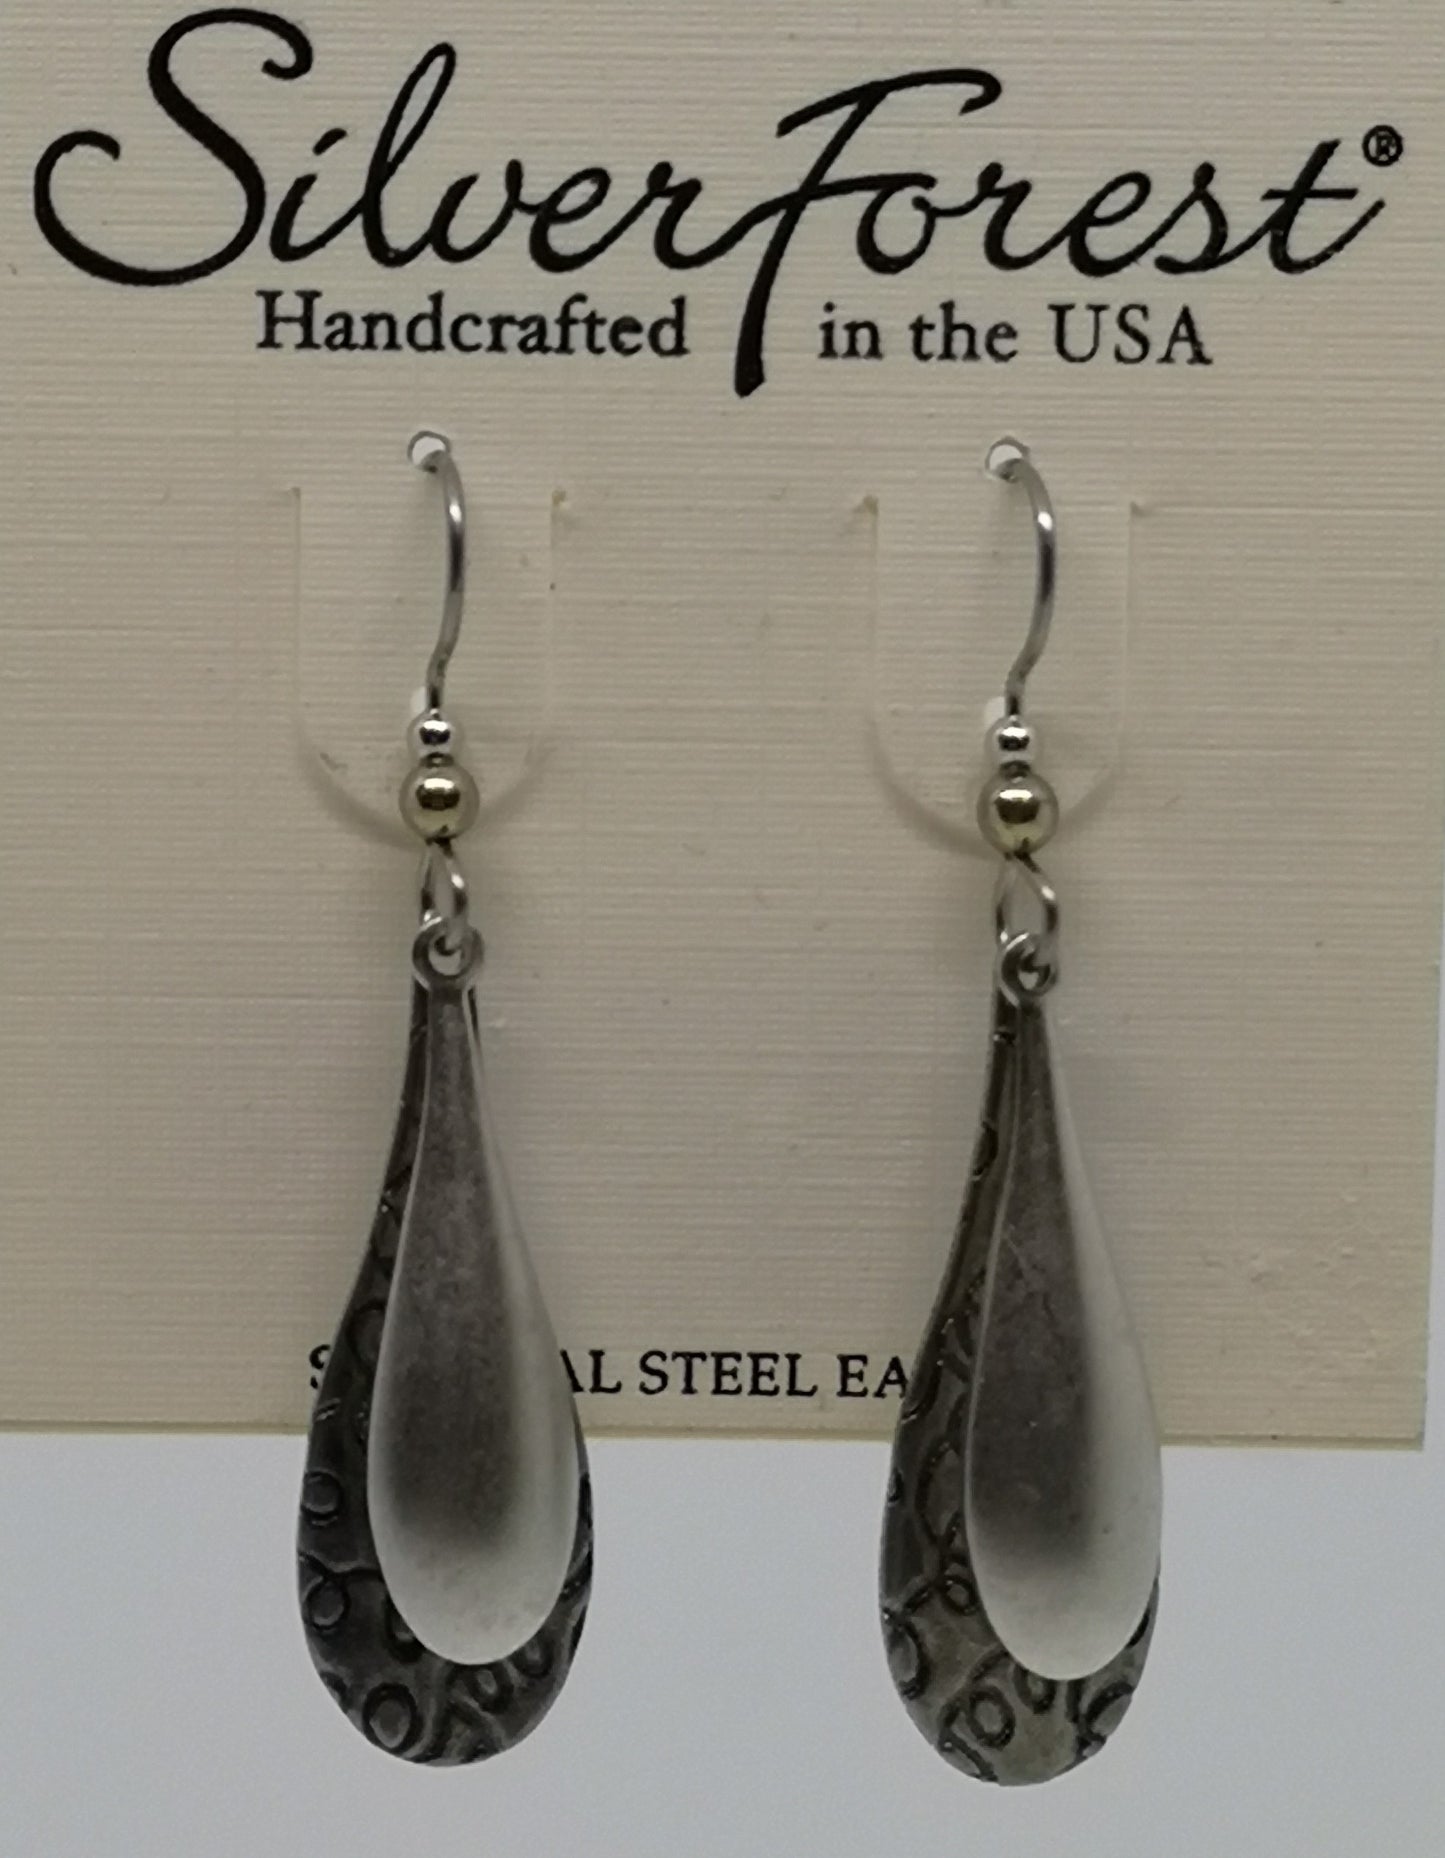 Silver forest surgical steel long tear drop shaped earrings